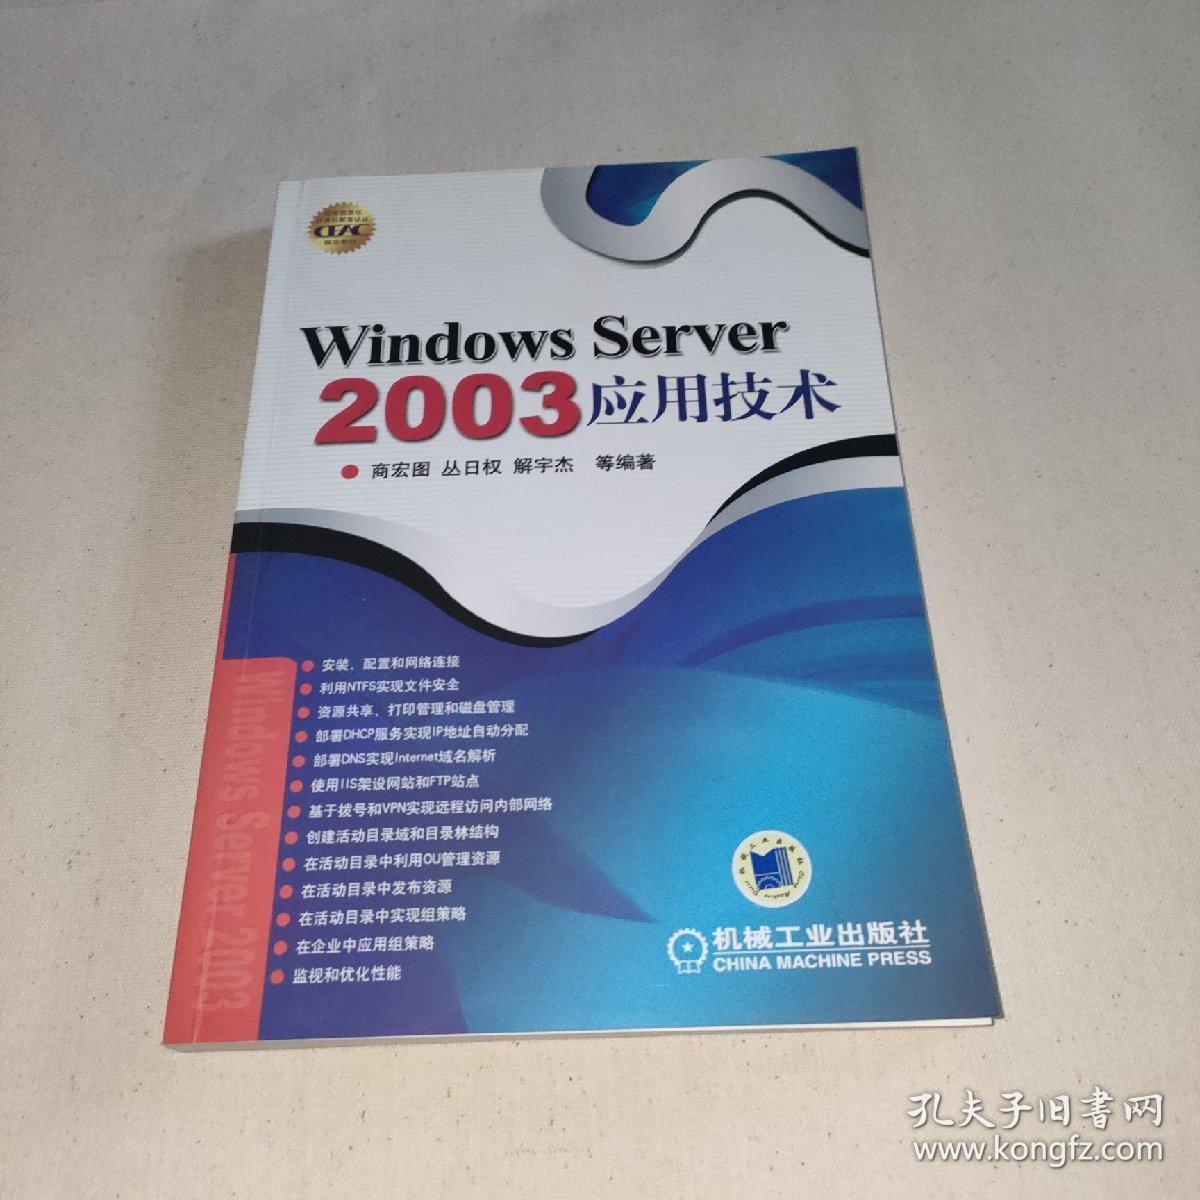 Windows Server 2003应用技术